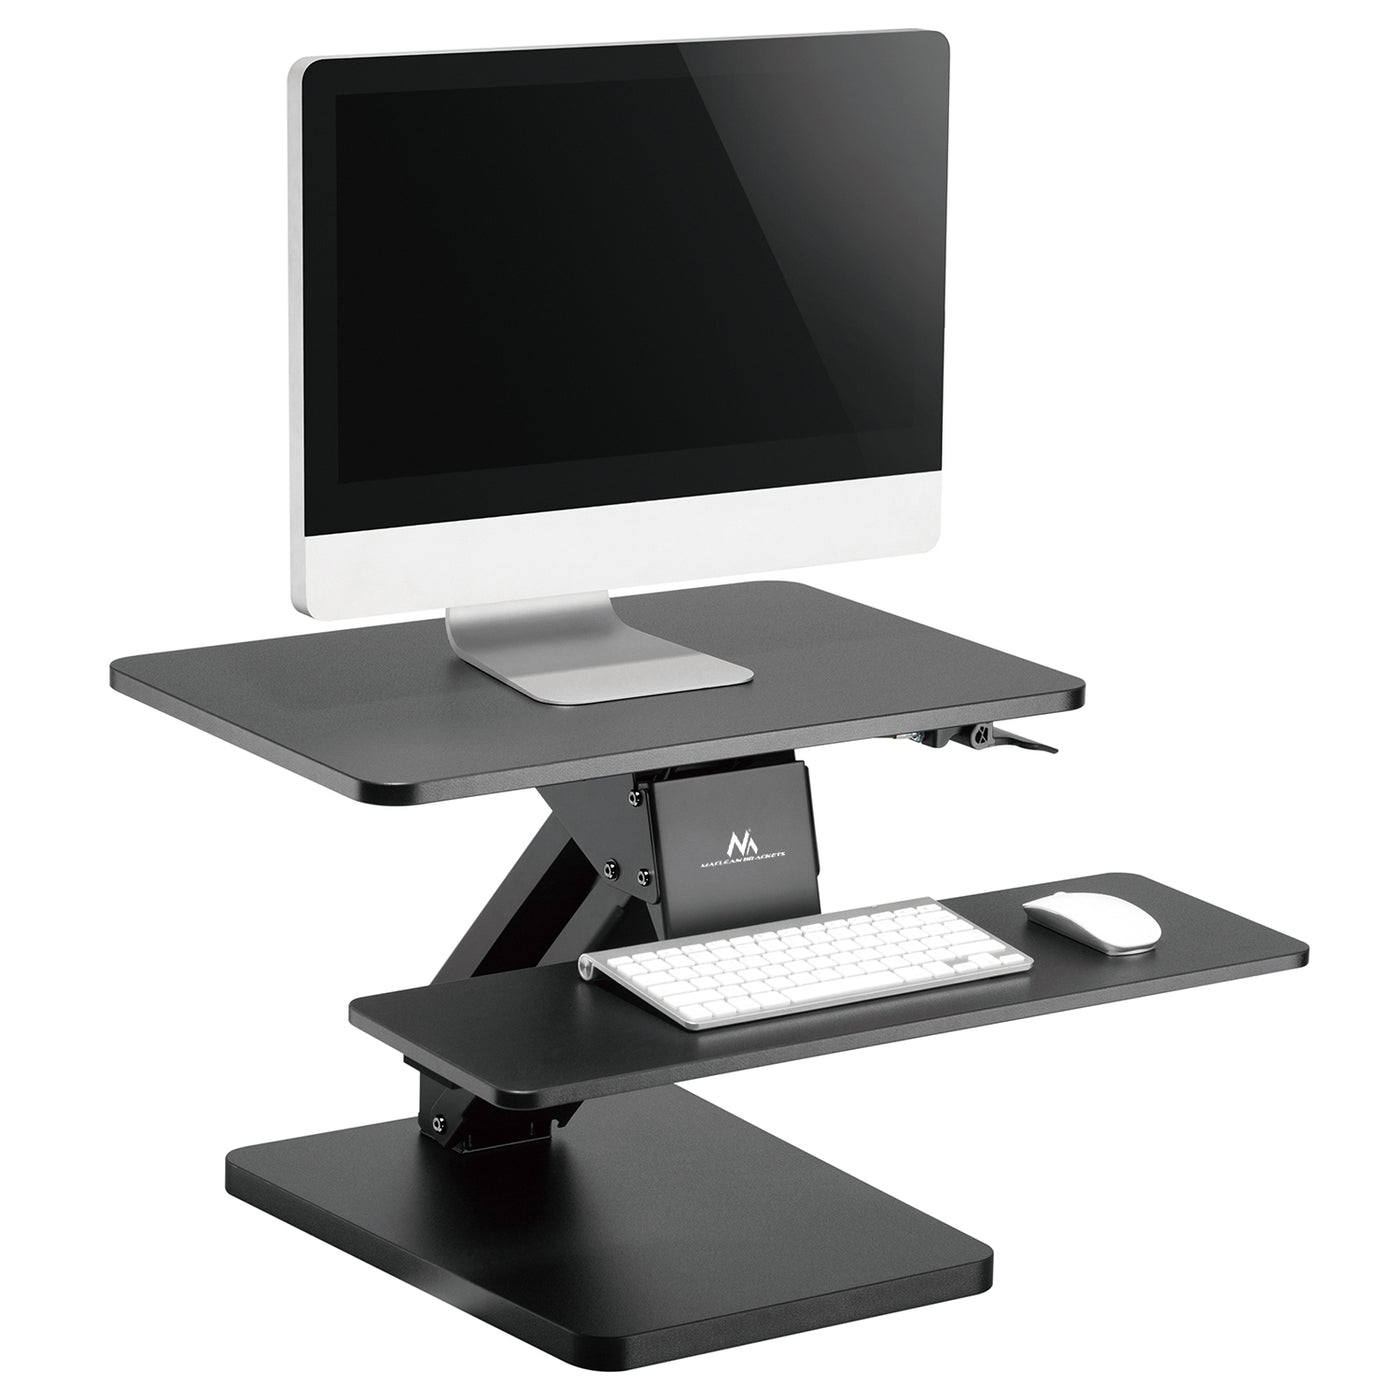 Maclean MC-882 Bureaustandaard voor laptop, monitor, toetsenbord, muis, voor zittende en staande werkhouding Ergonomische standaard